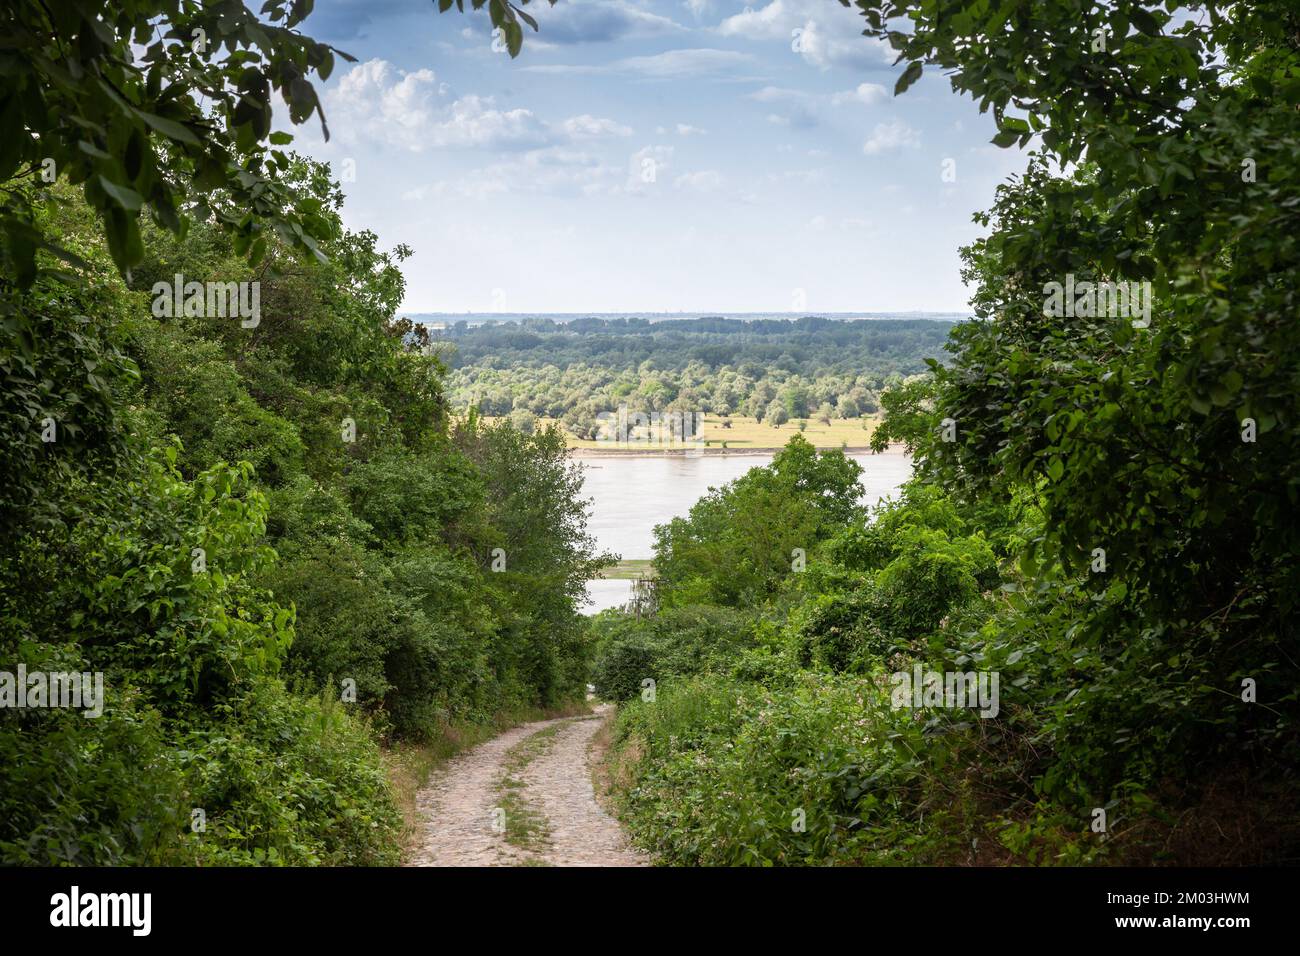 Panorama del río Danubio en Serbia en Krcedin, Vojvodina. El Danubio es el río más grande de Europa Central. Foto de stock